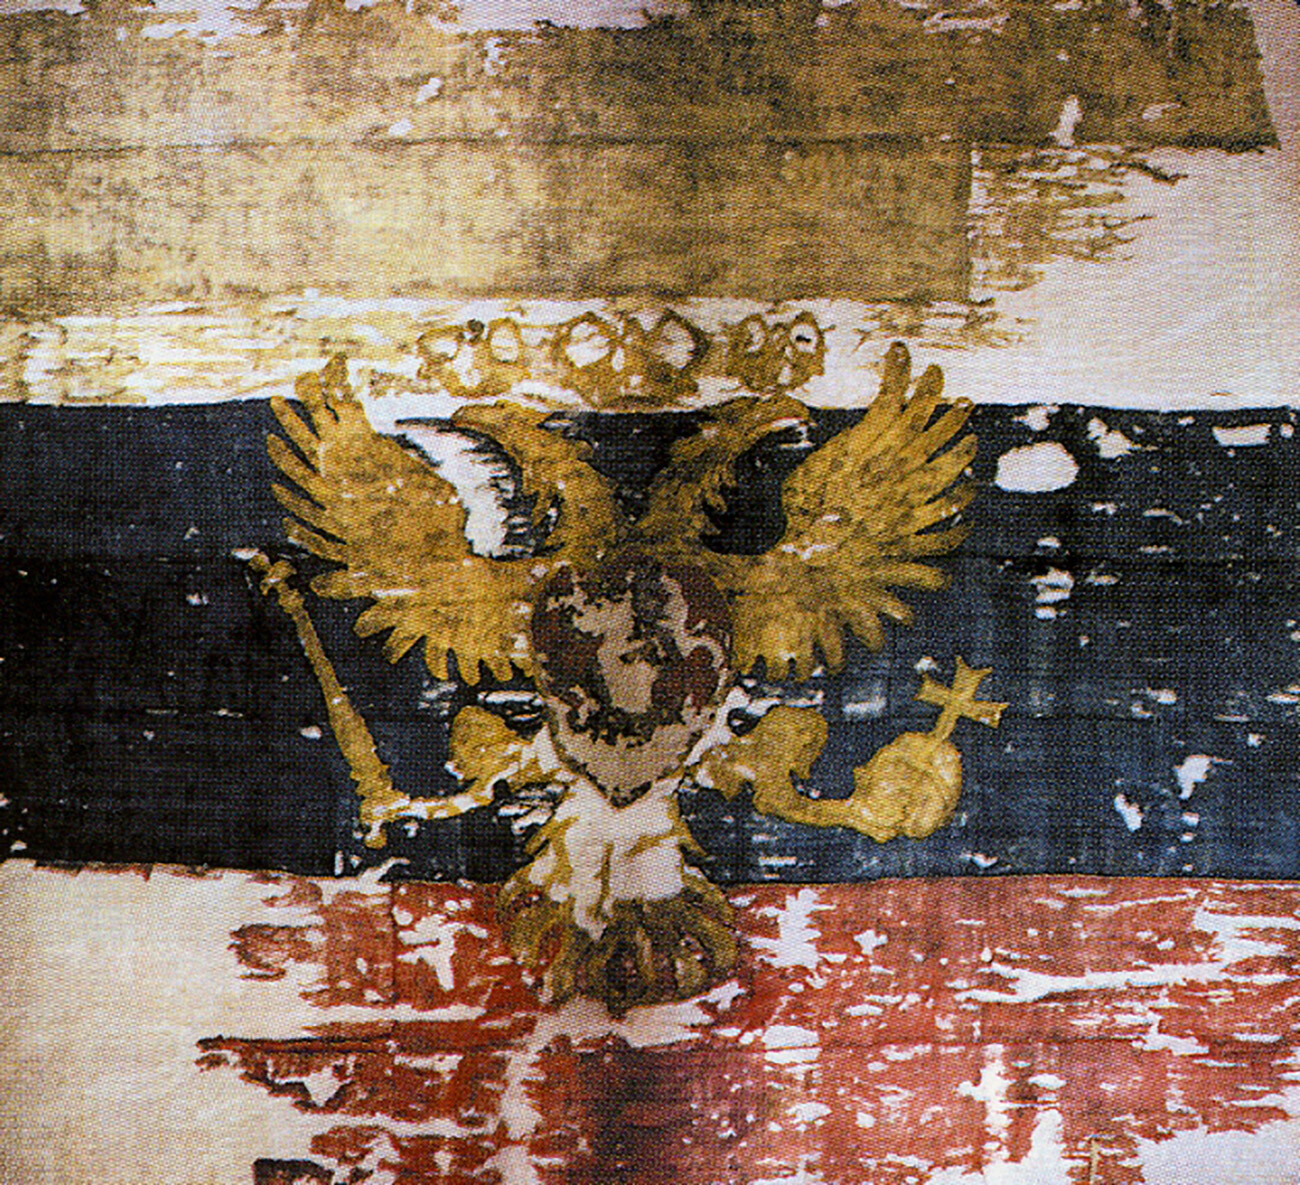 La più antica copia della “bandiera dello zar di Mosca”